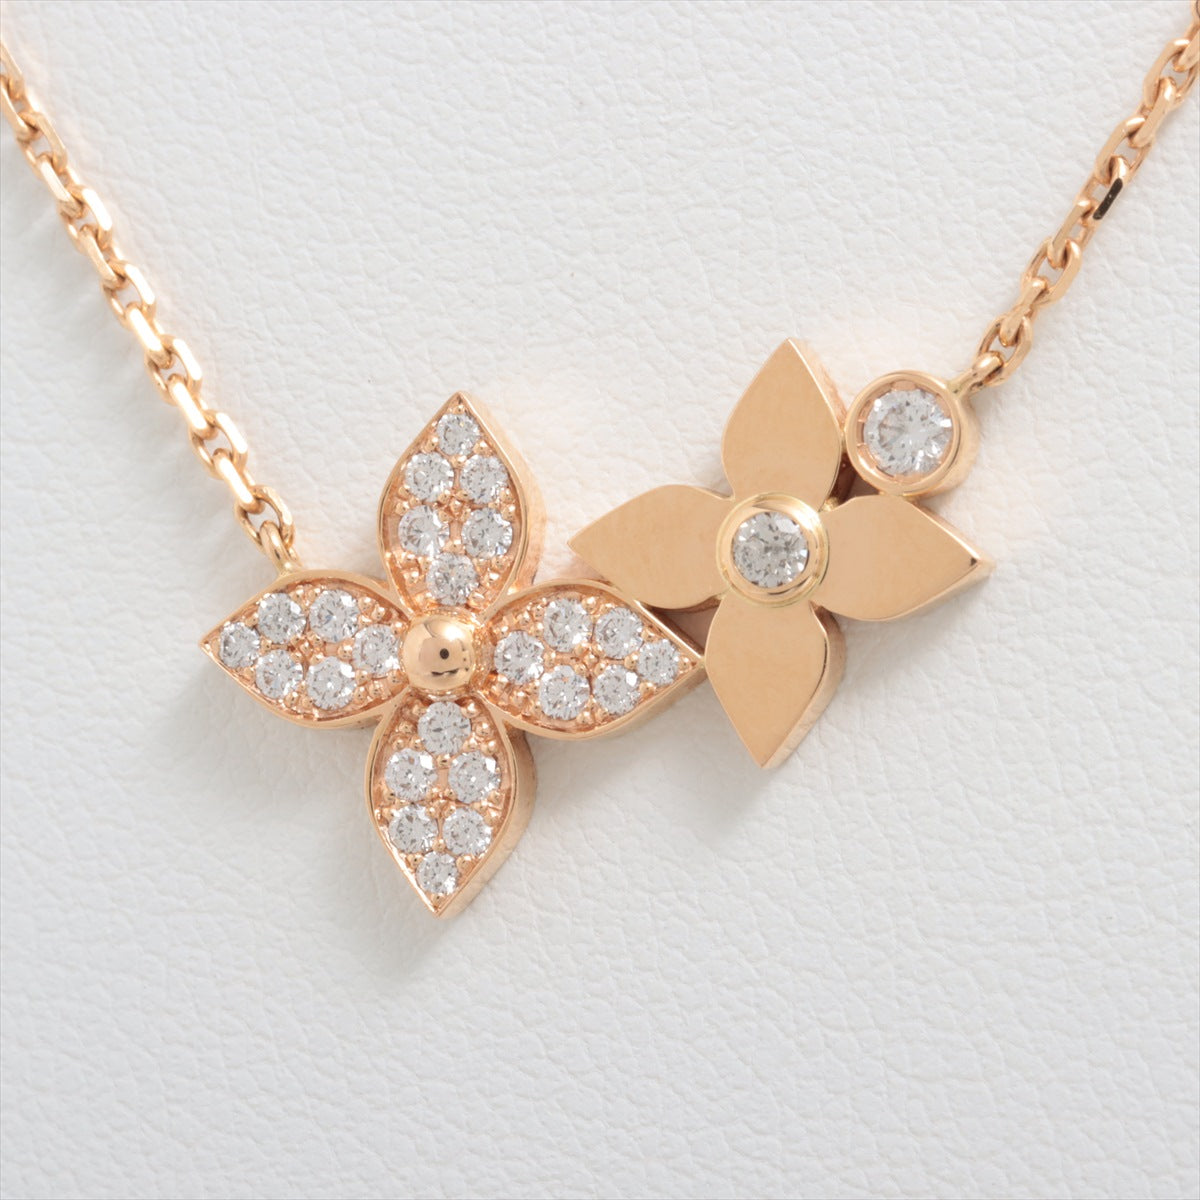 Louis Vuitton Pandantif Star Blossom Double diamond Necklace 750(PG) 6.6g